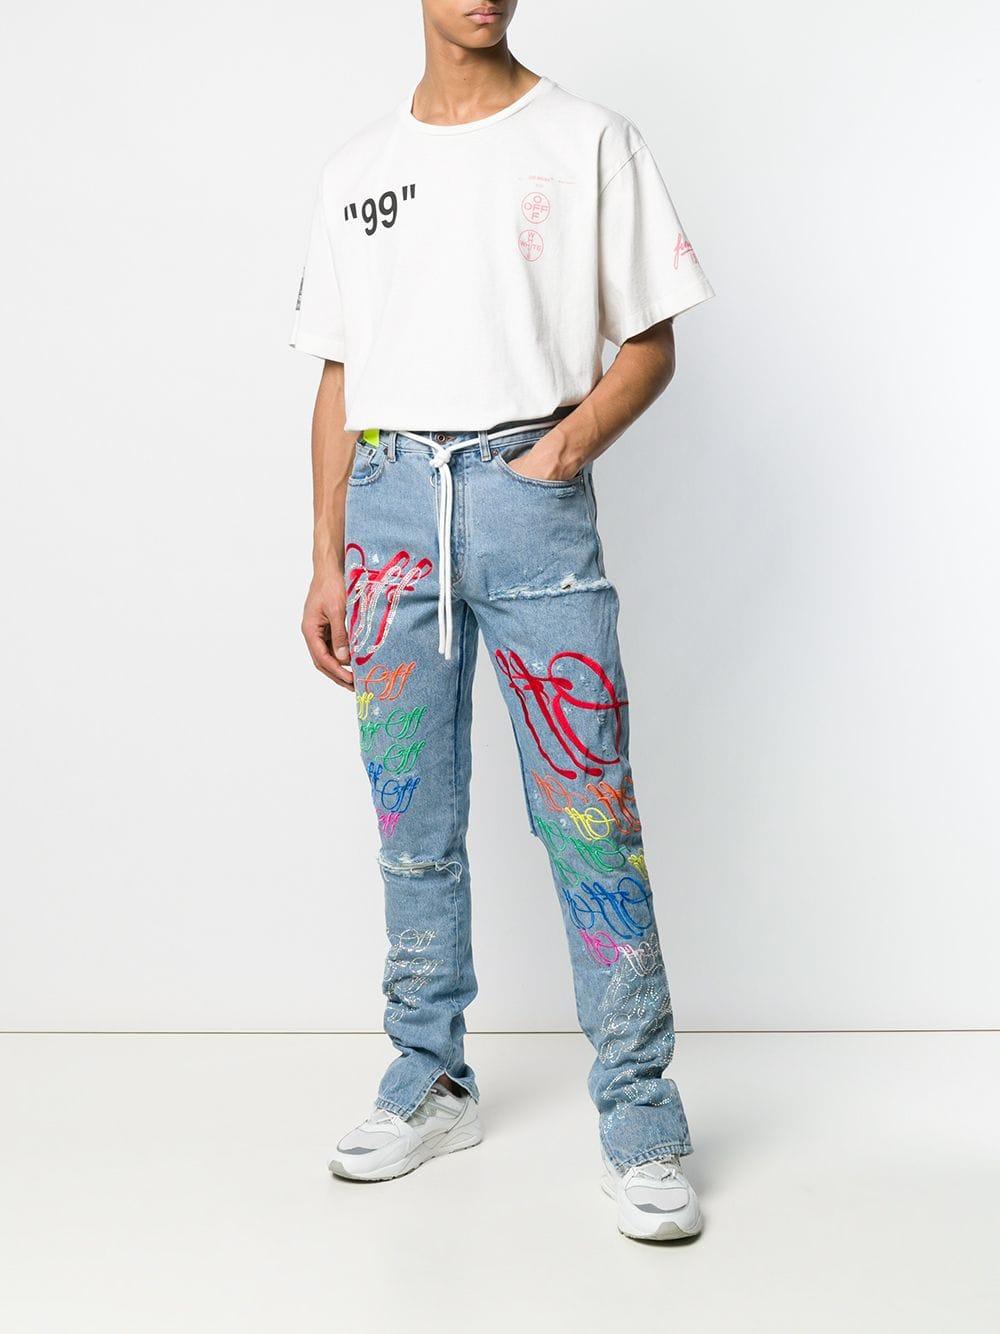 distressed graffiti jeans